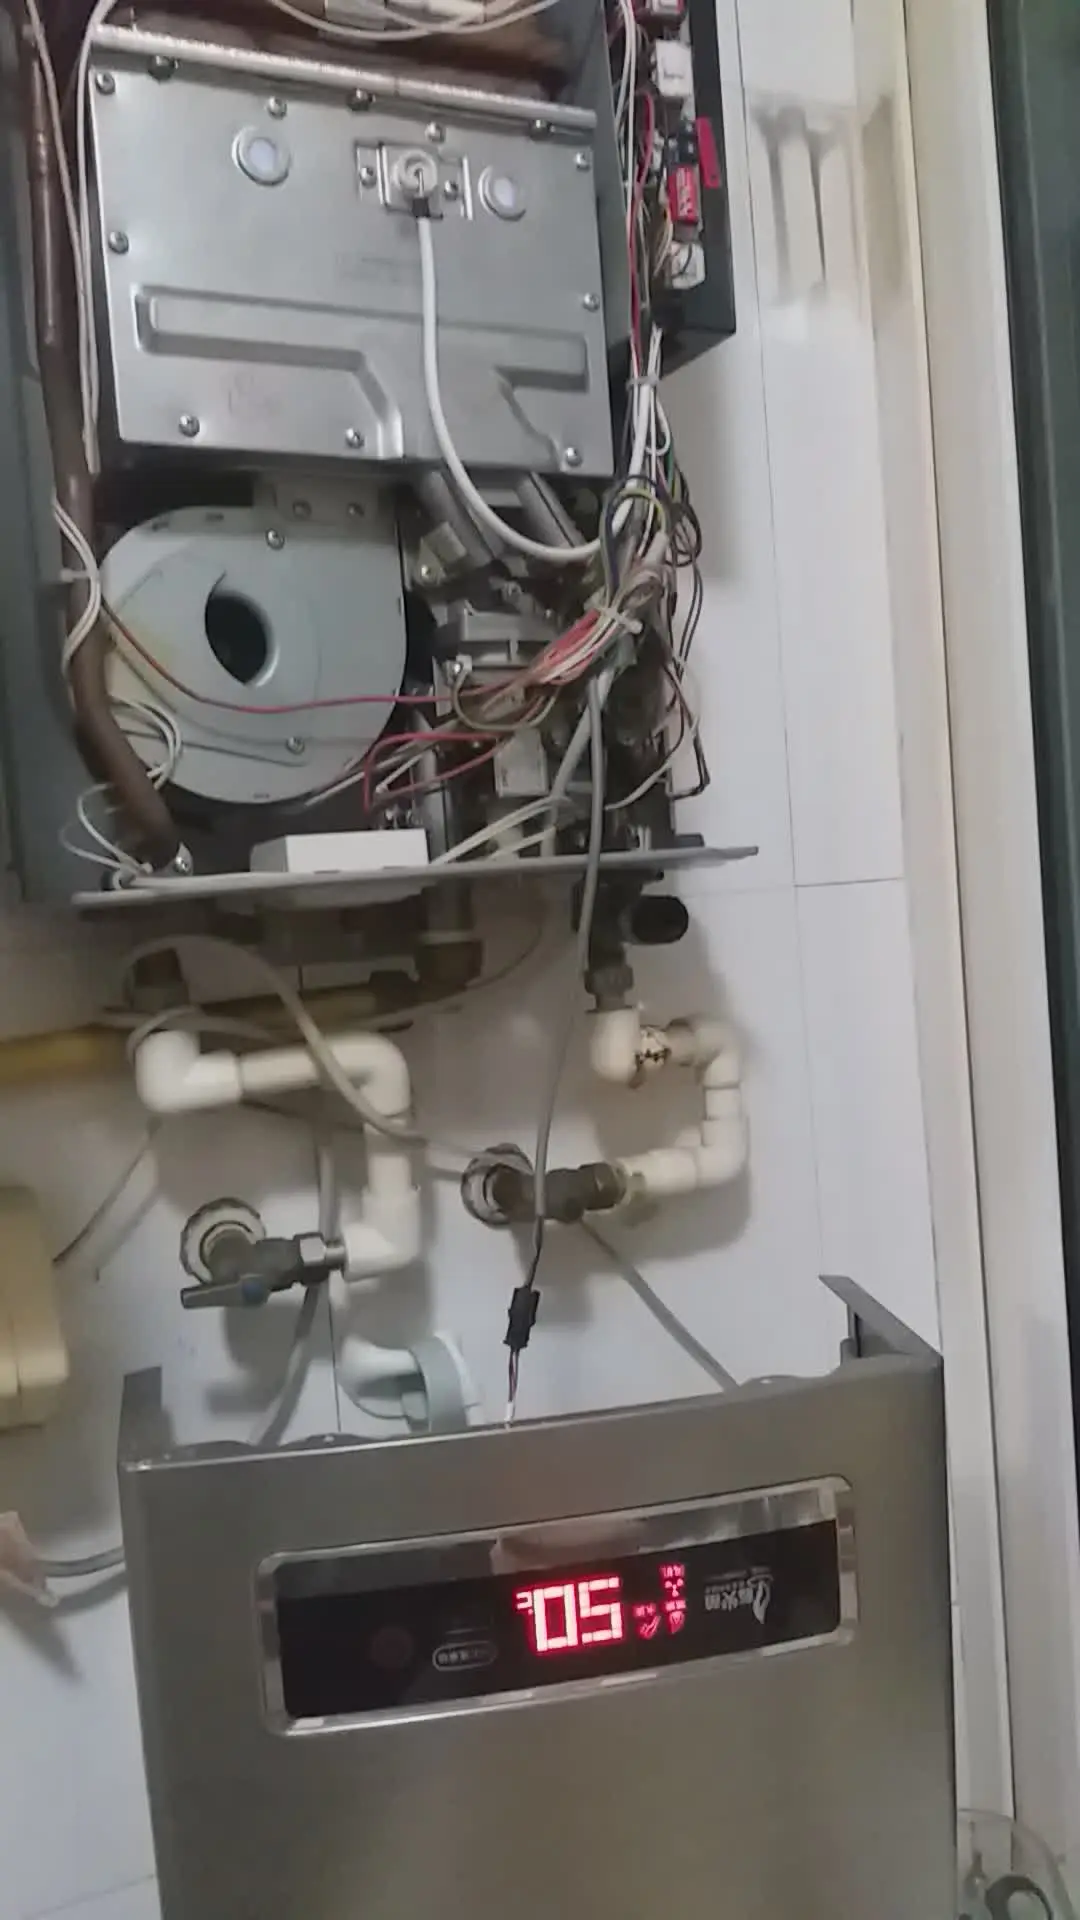 青岛专业综合家电维修热水器提供简单维修-更换辅件/调试、更换比例阀等服务